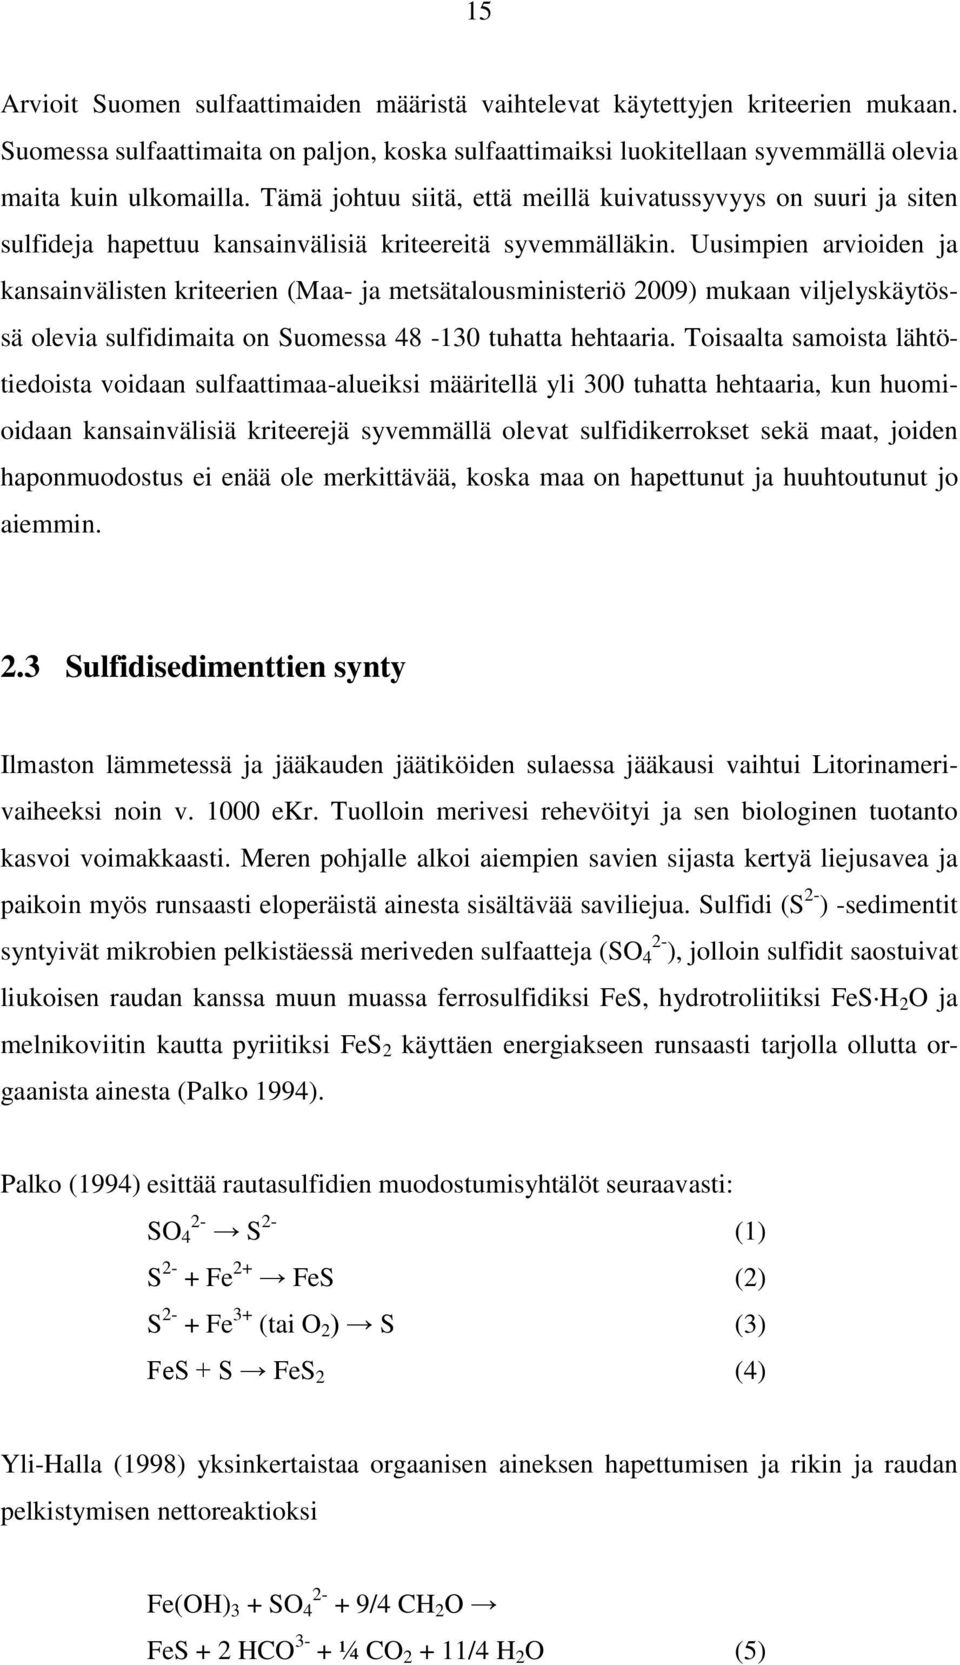 Uusimpien arvioiden ja kansainvälisten kriteerien (Maa- ja metsätalousministeriö 2009) mukaan viljelyskäytössä olevia sulfidimaita on Suomessa 48-130 tuhatta hehtaaria.